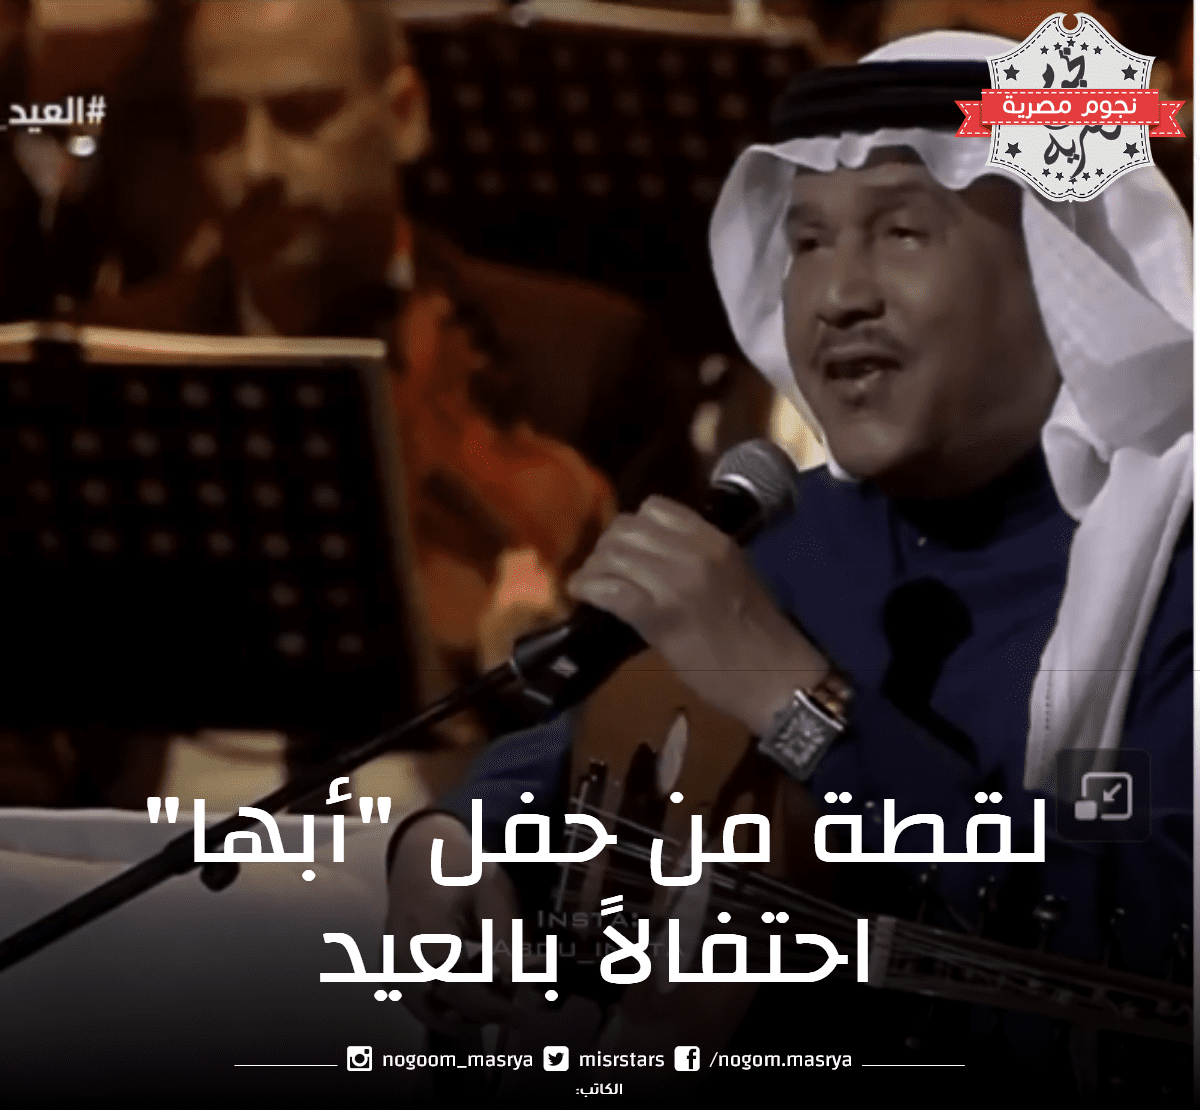 كلمات وفيديو أغنية "من العايدين" للفنان محمد عبده